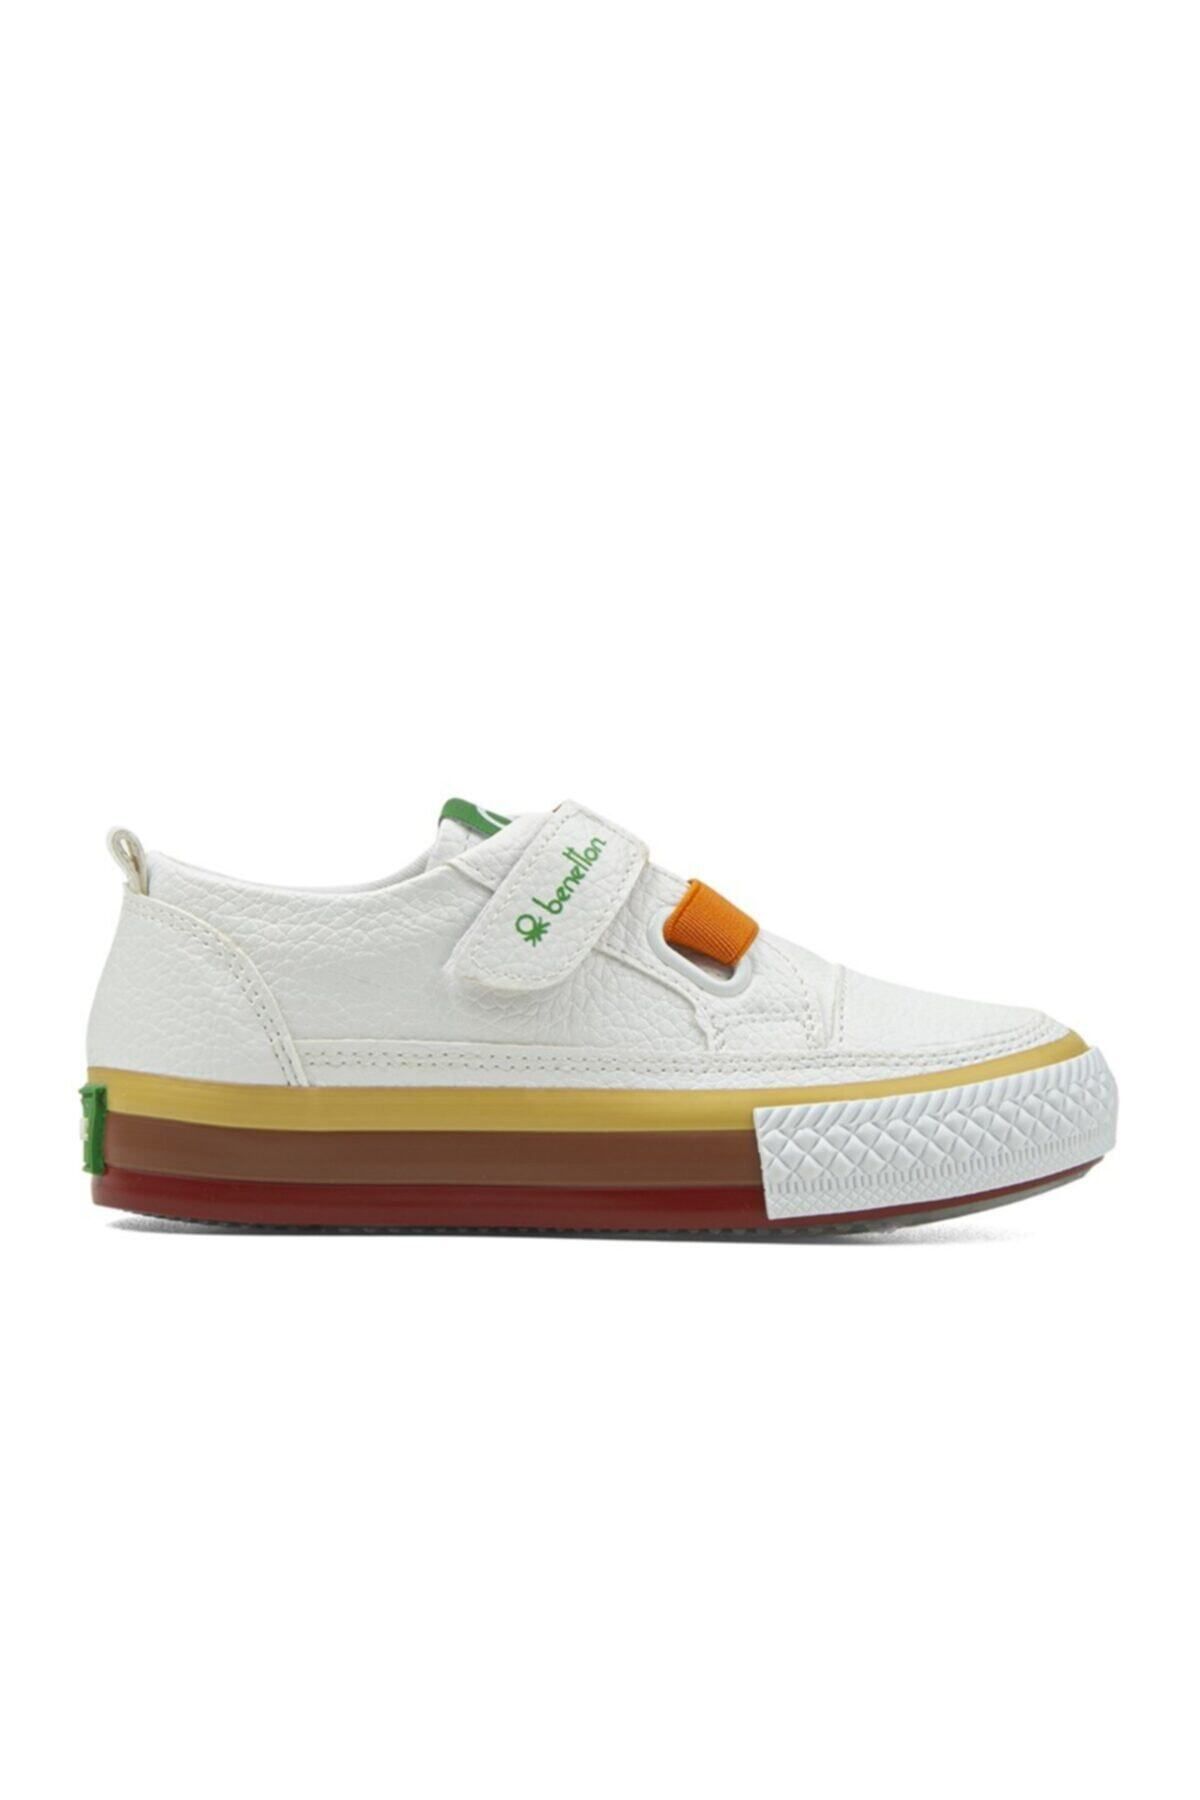 Benetton ® | BN-30445 - 3394 Beyaz - Çocuk Spor Ayakkabı